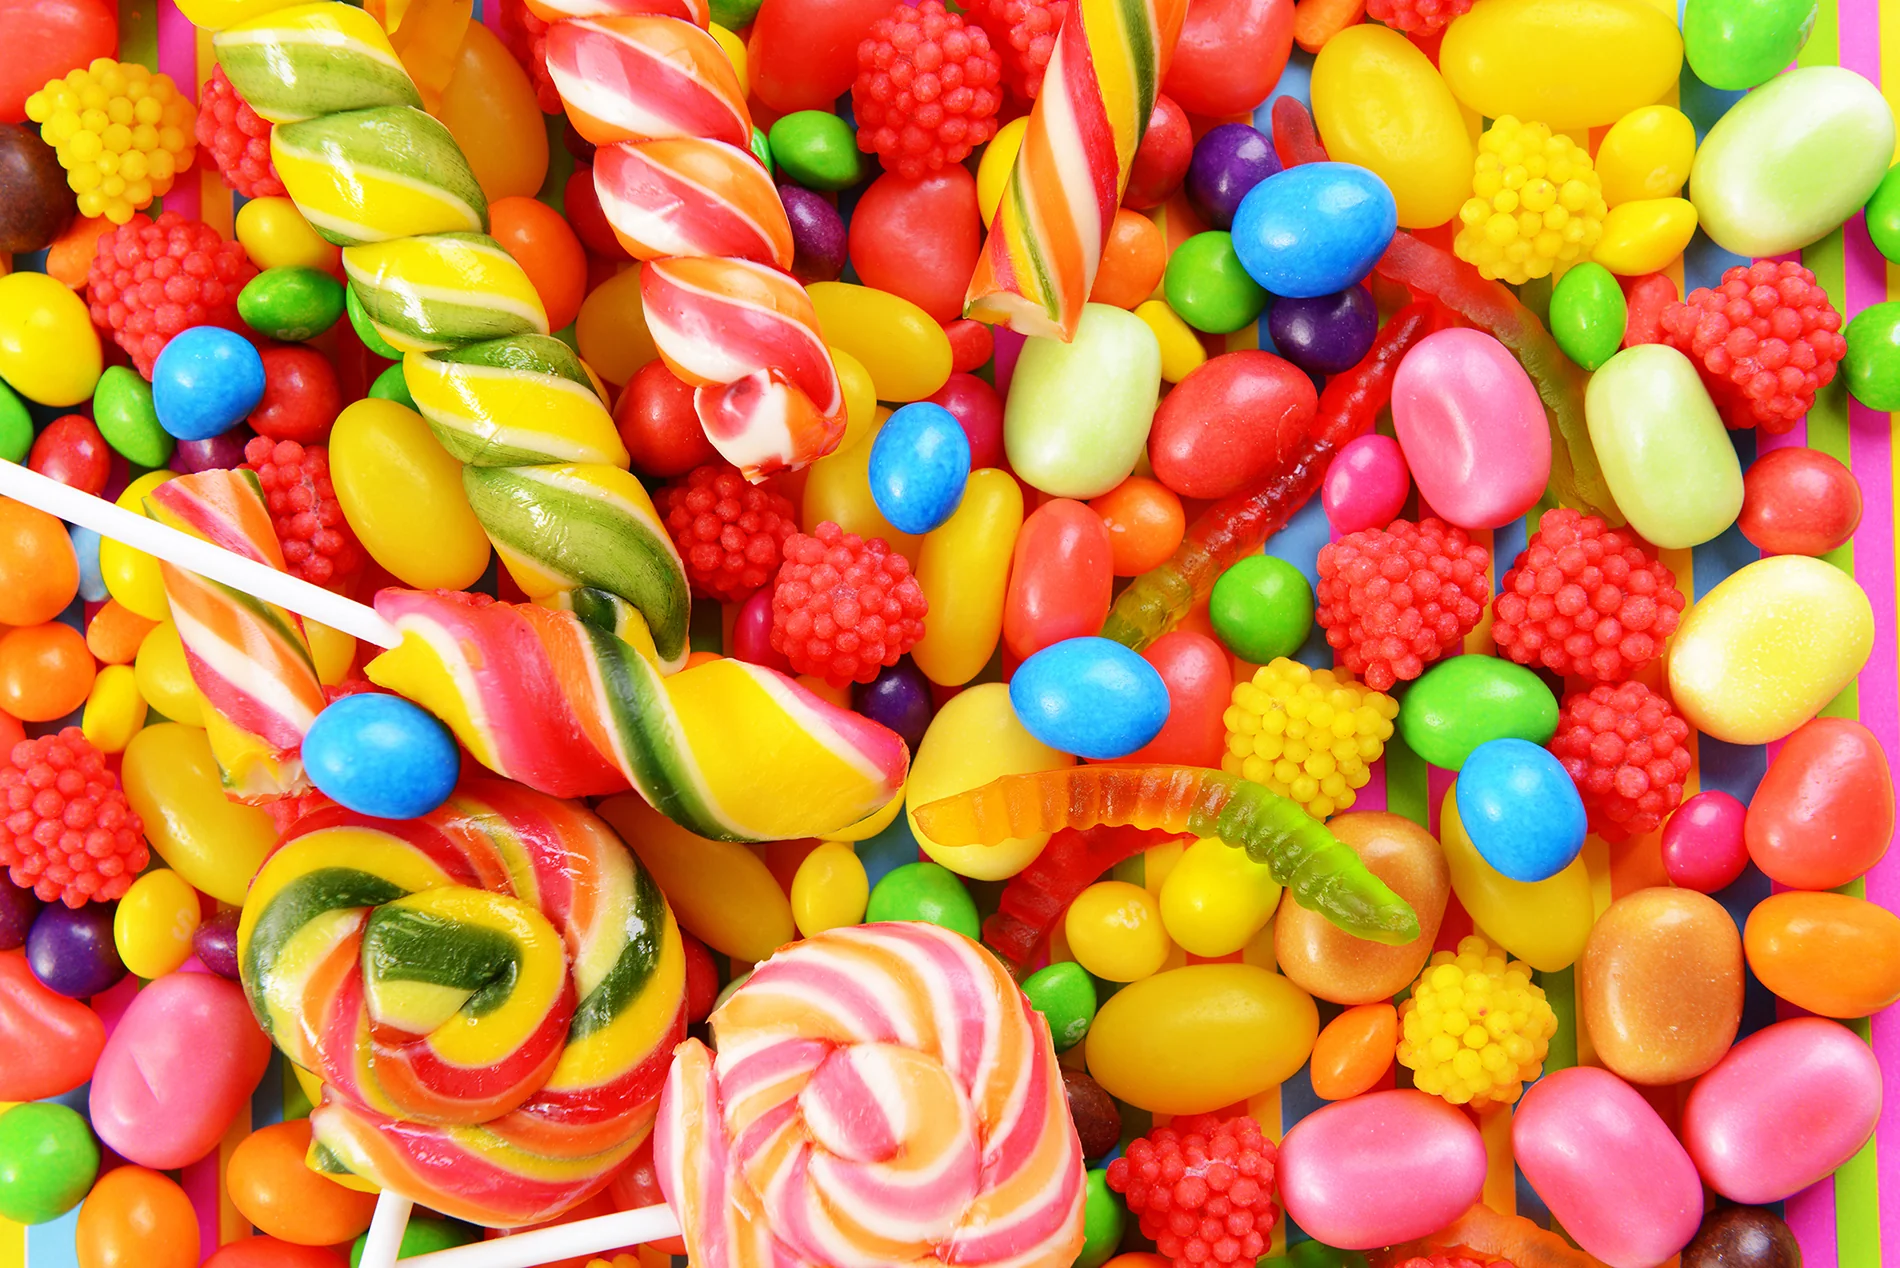 تناول الحلويات بكثرة يساهم في حدوث تسوس الاسنان